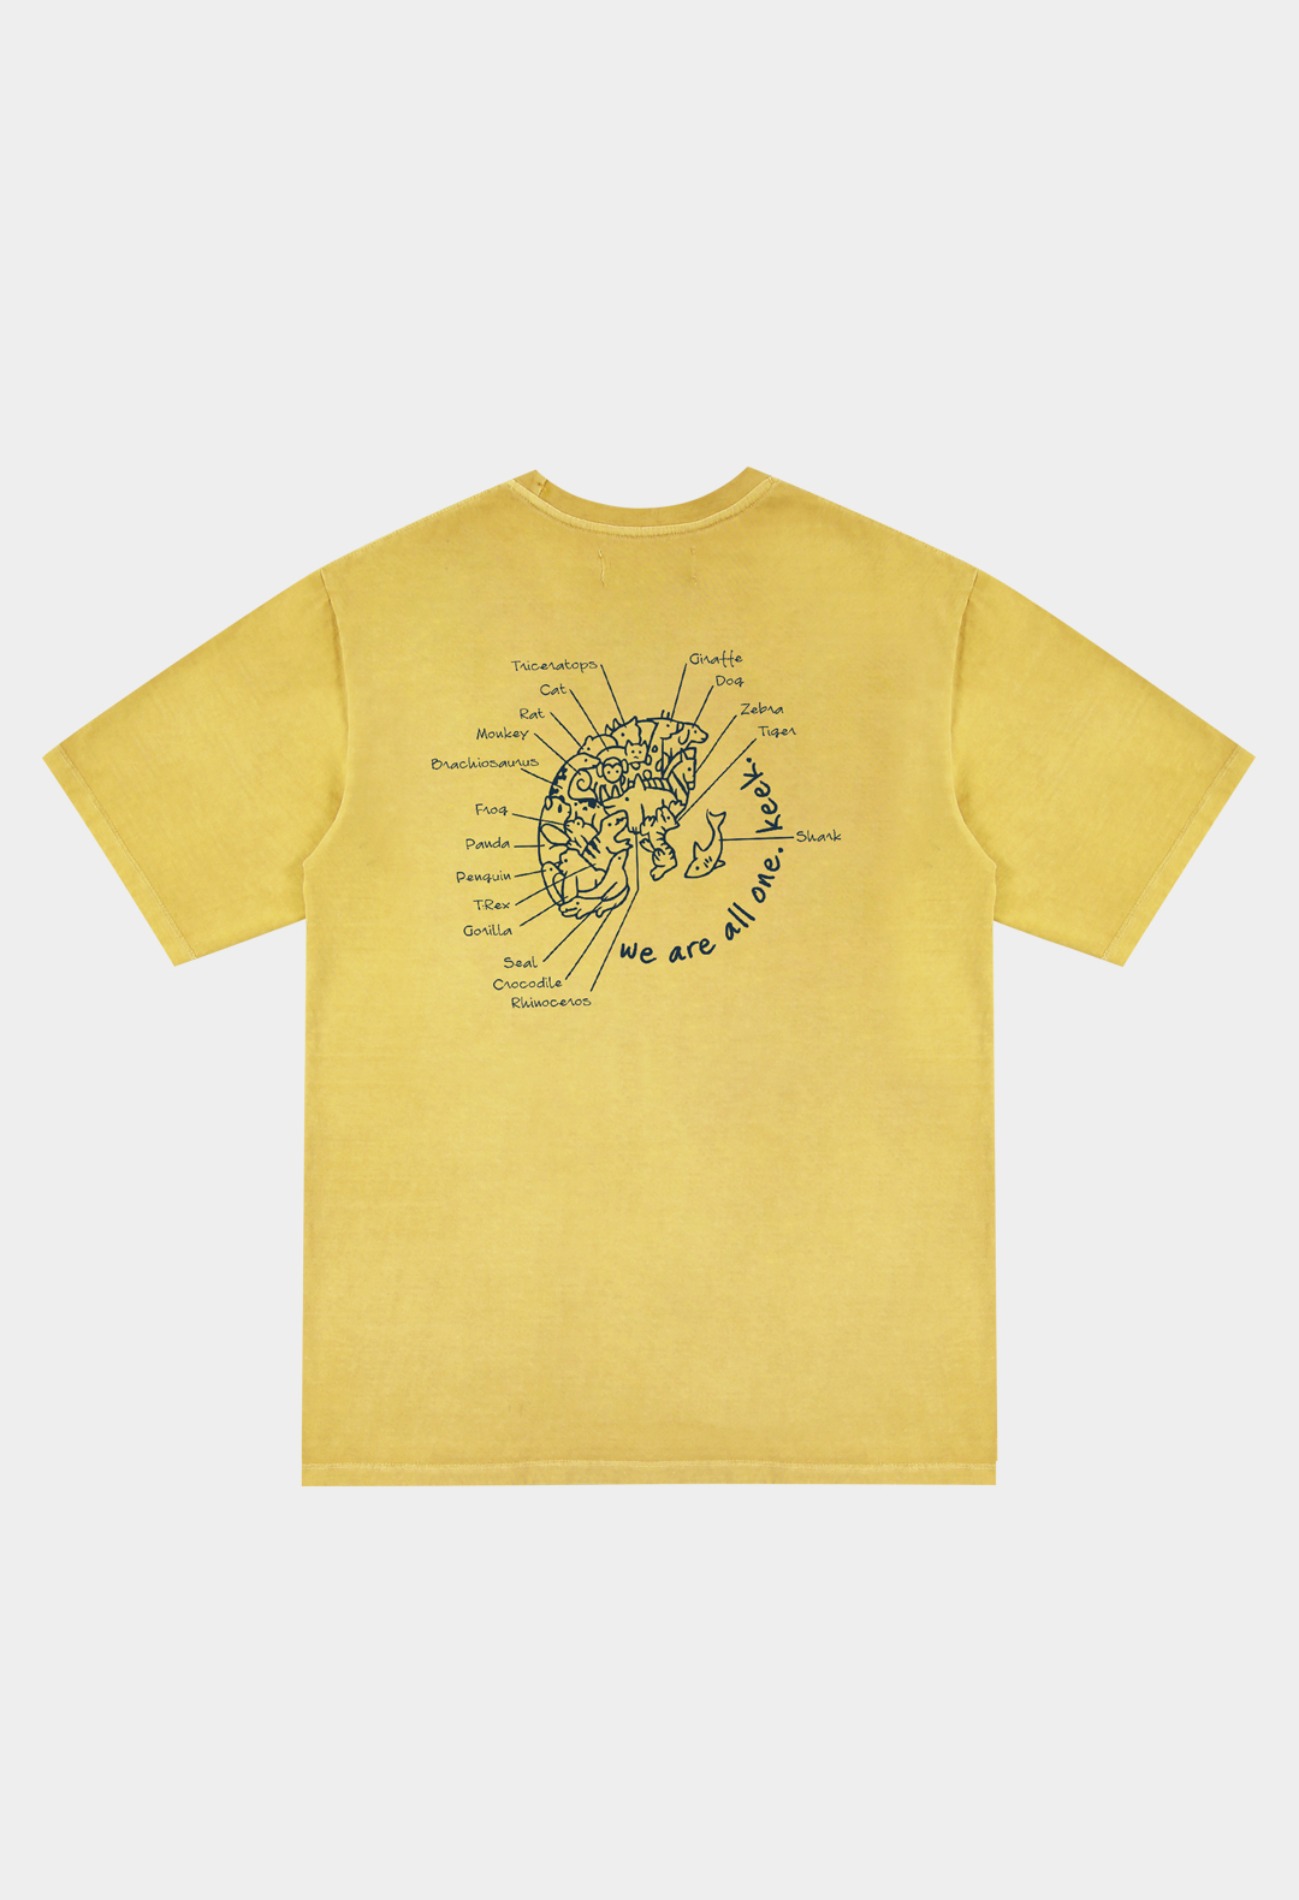 keek Washing Earth T-shirts - Yellow 스트릿패션 유니섹스브랜드 커플시밀러룩 남자쇼핑몰 여성의류쇼핑몰 후드티 힙색